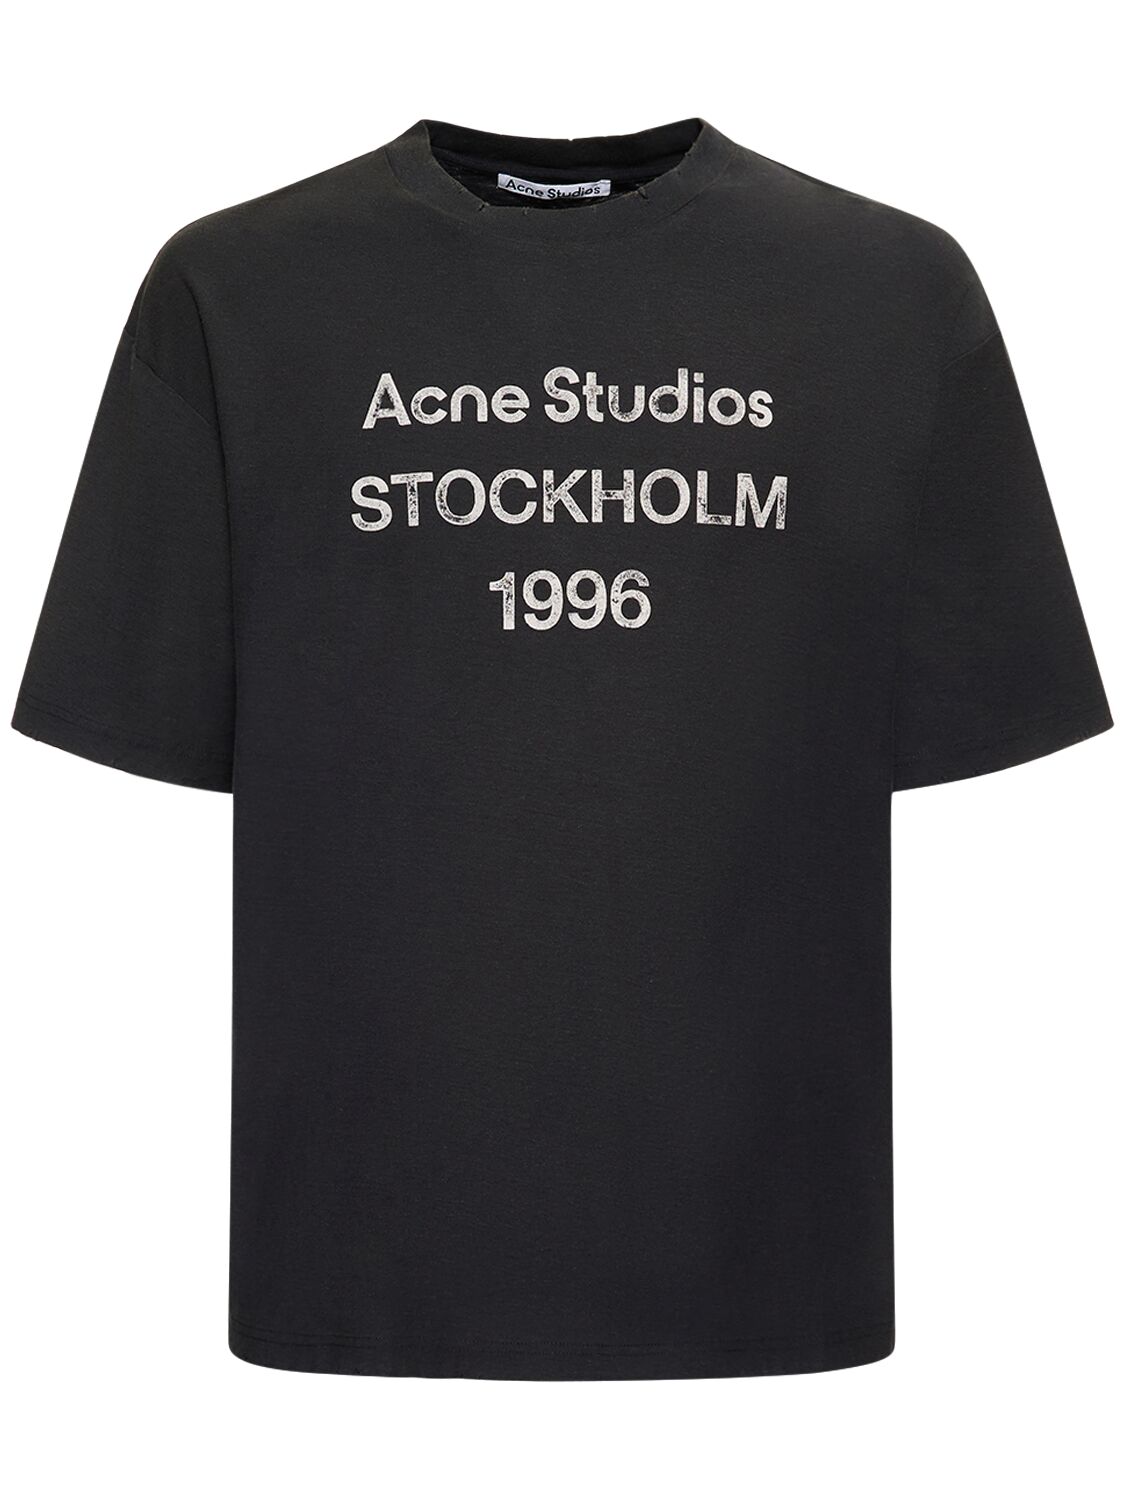 Exford 1996 Cotton Blend T-shirt – MEN > CLOTHING > T-SHIRTS